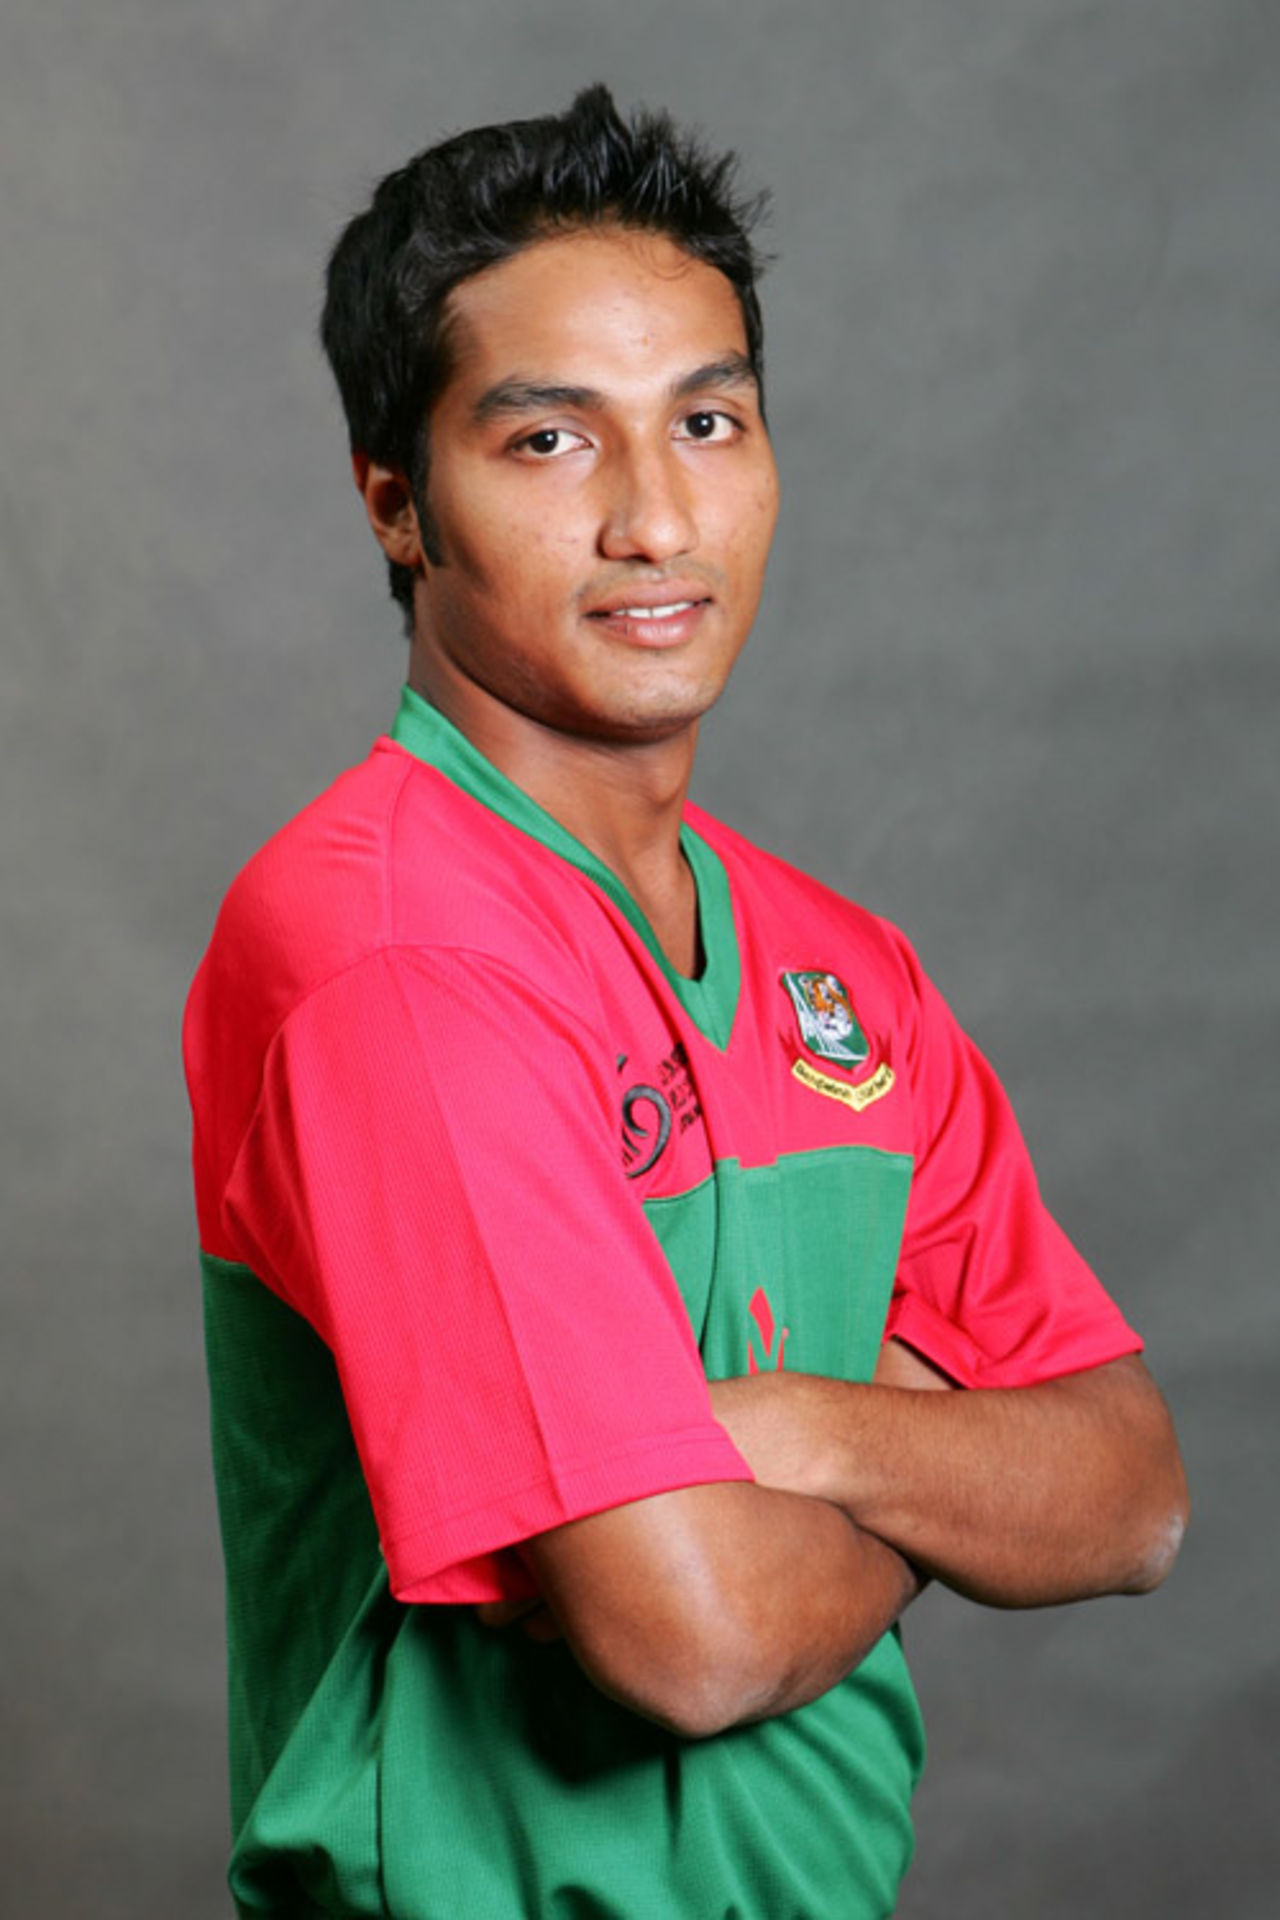 Ashraful Hossain profile picture, Kuala Lumpur, February 12, 2008 